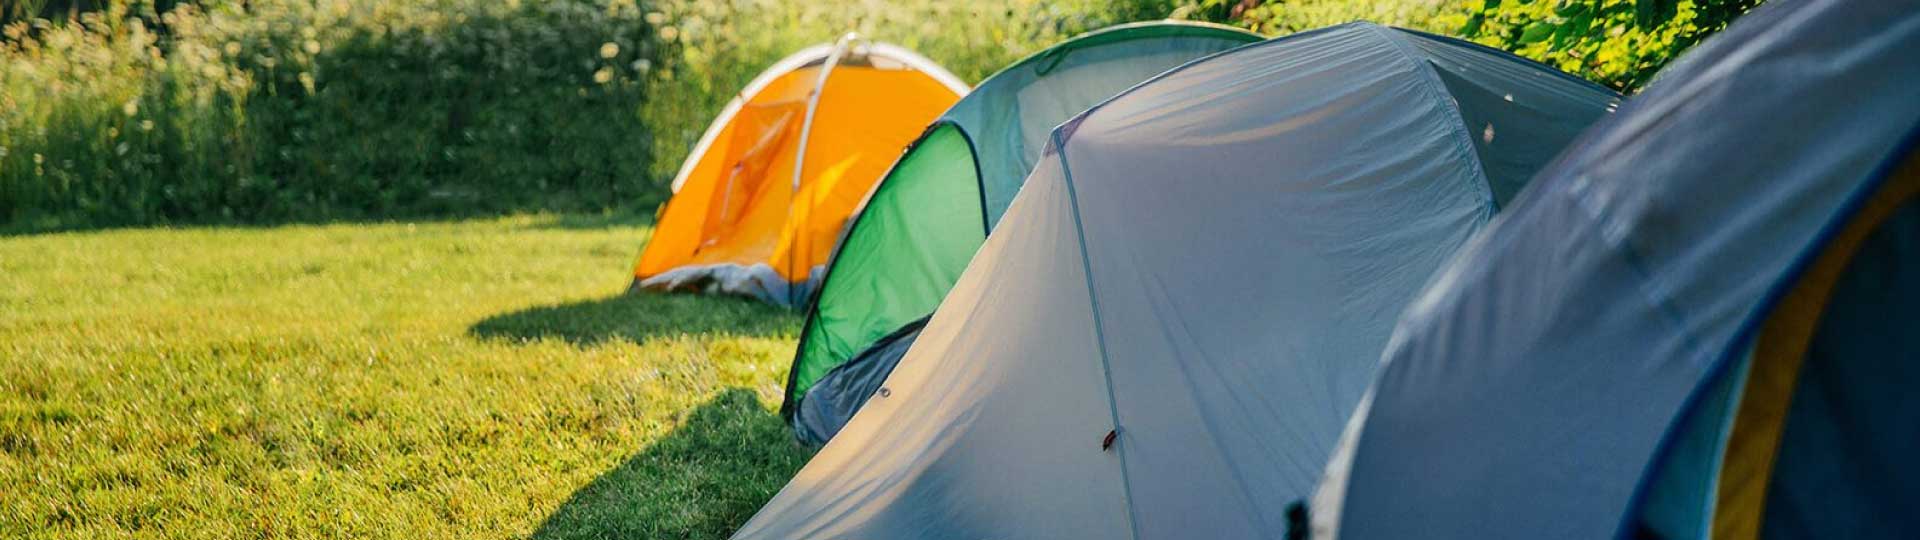 Material camping